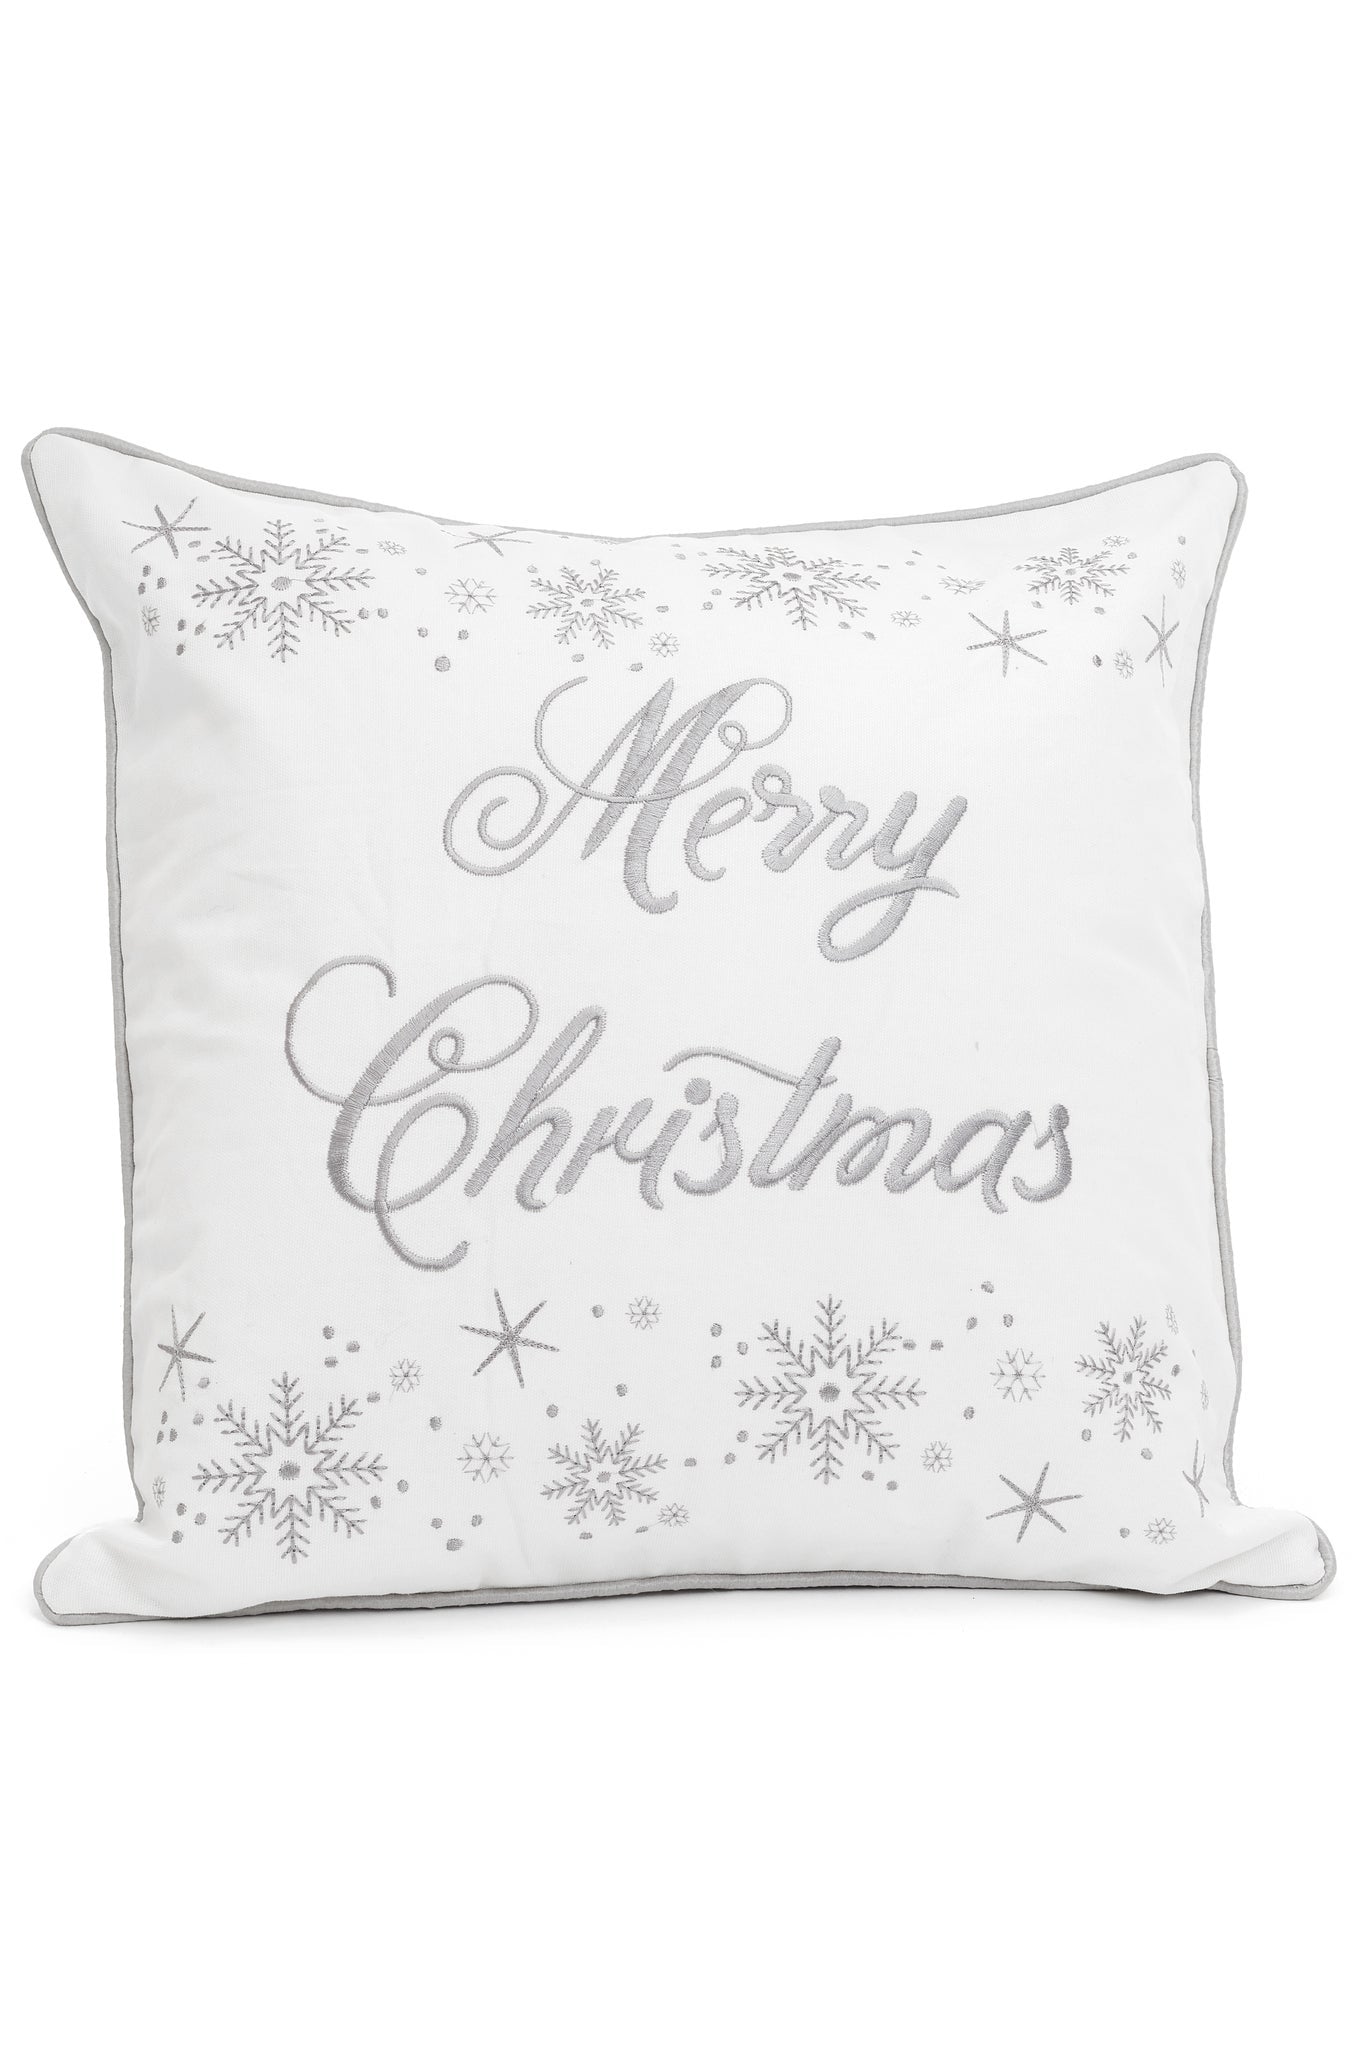 Merry Christmas Cushion